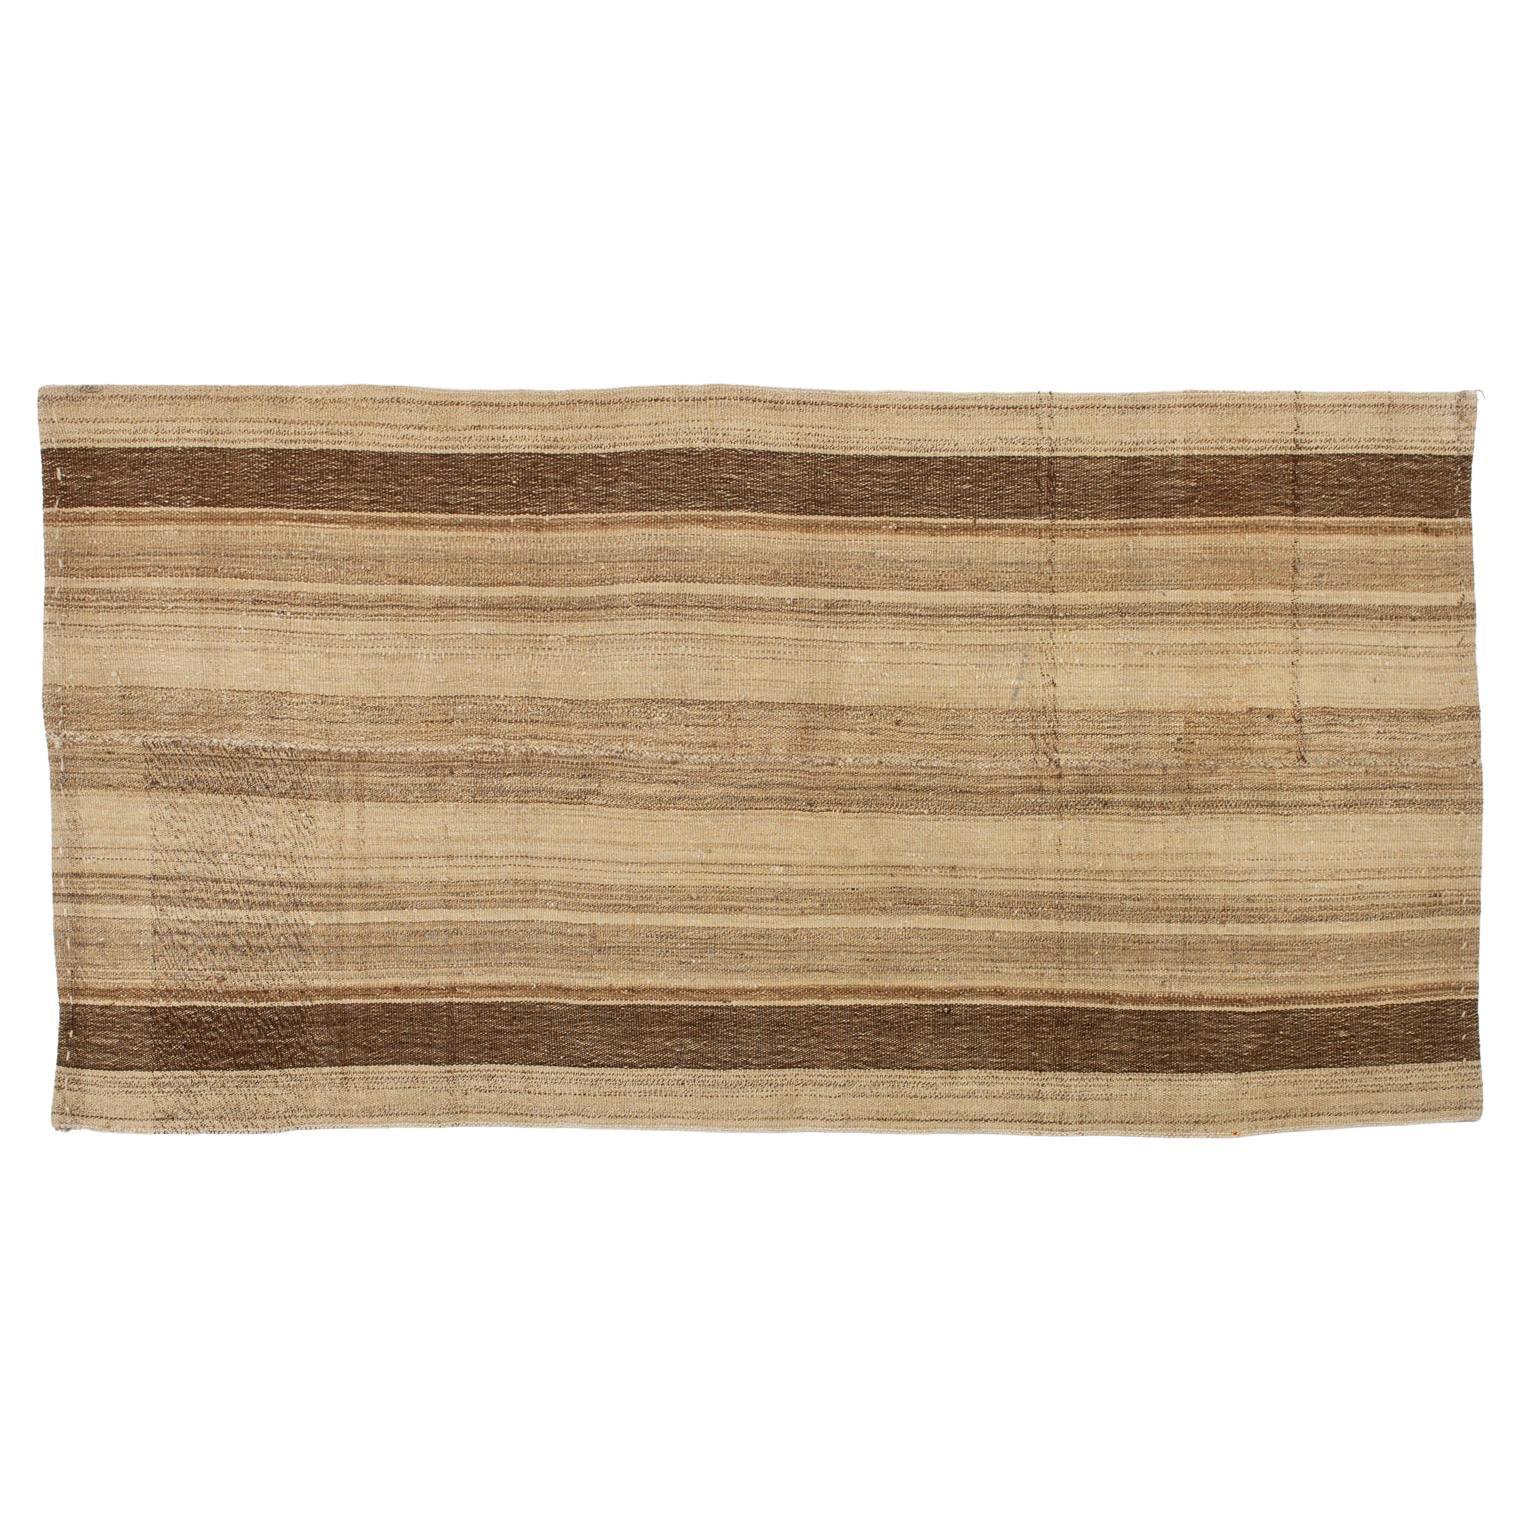 Carpet "Cicim" in Natural Wools